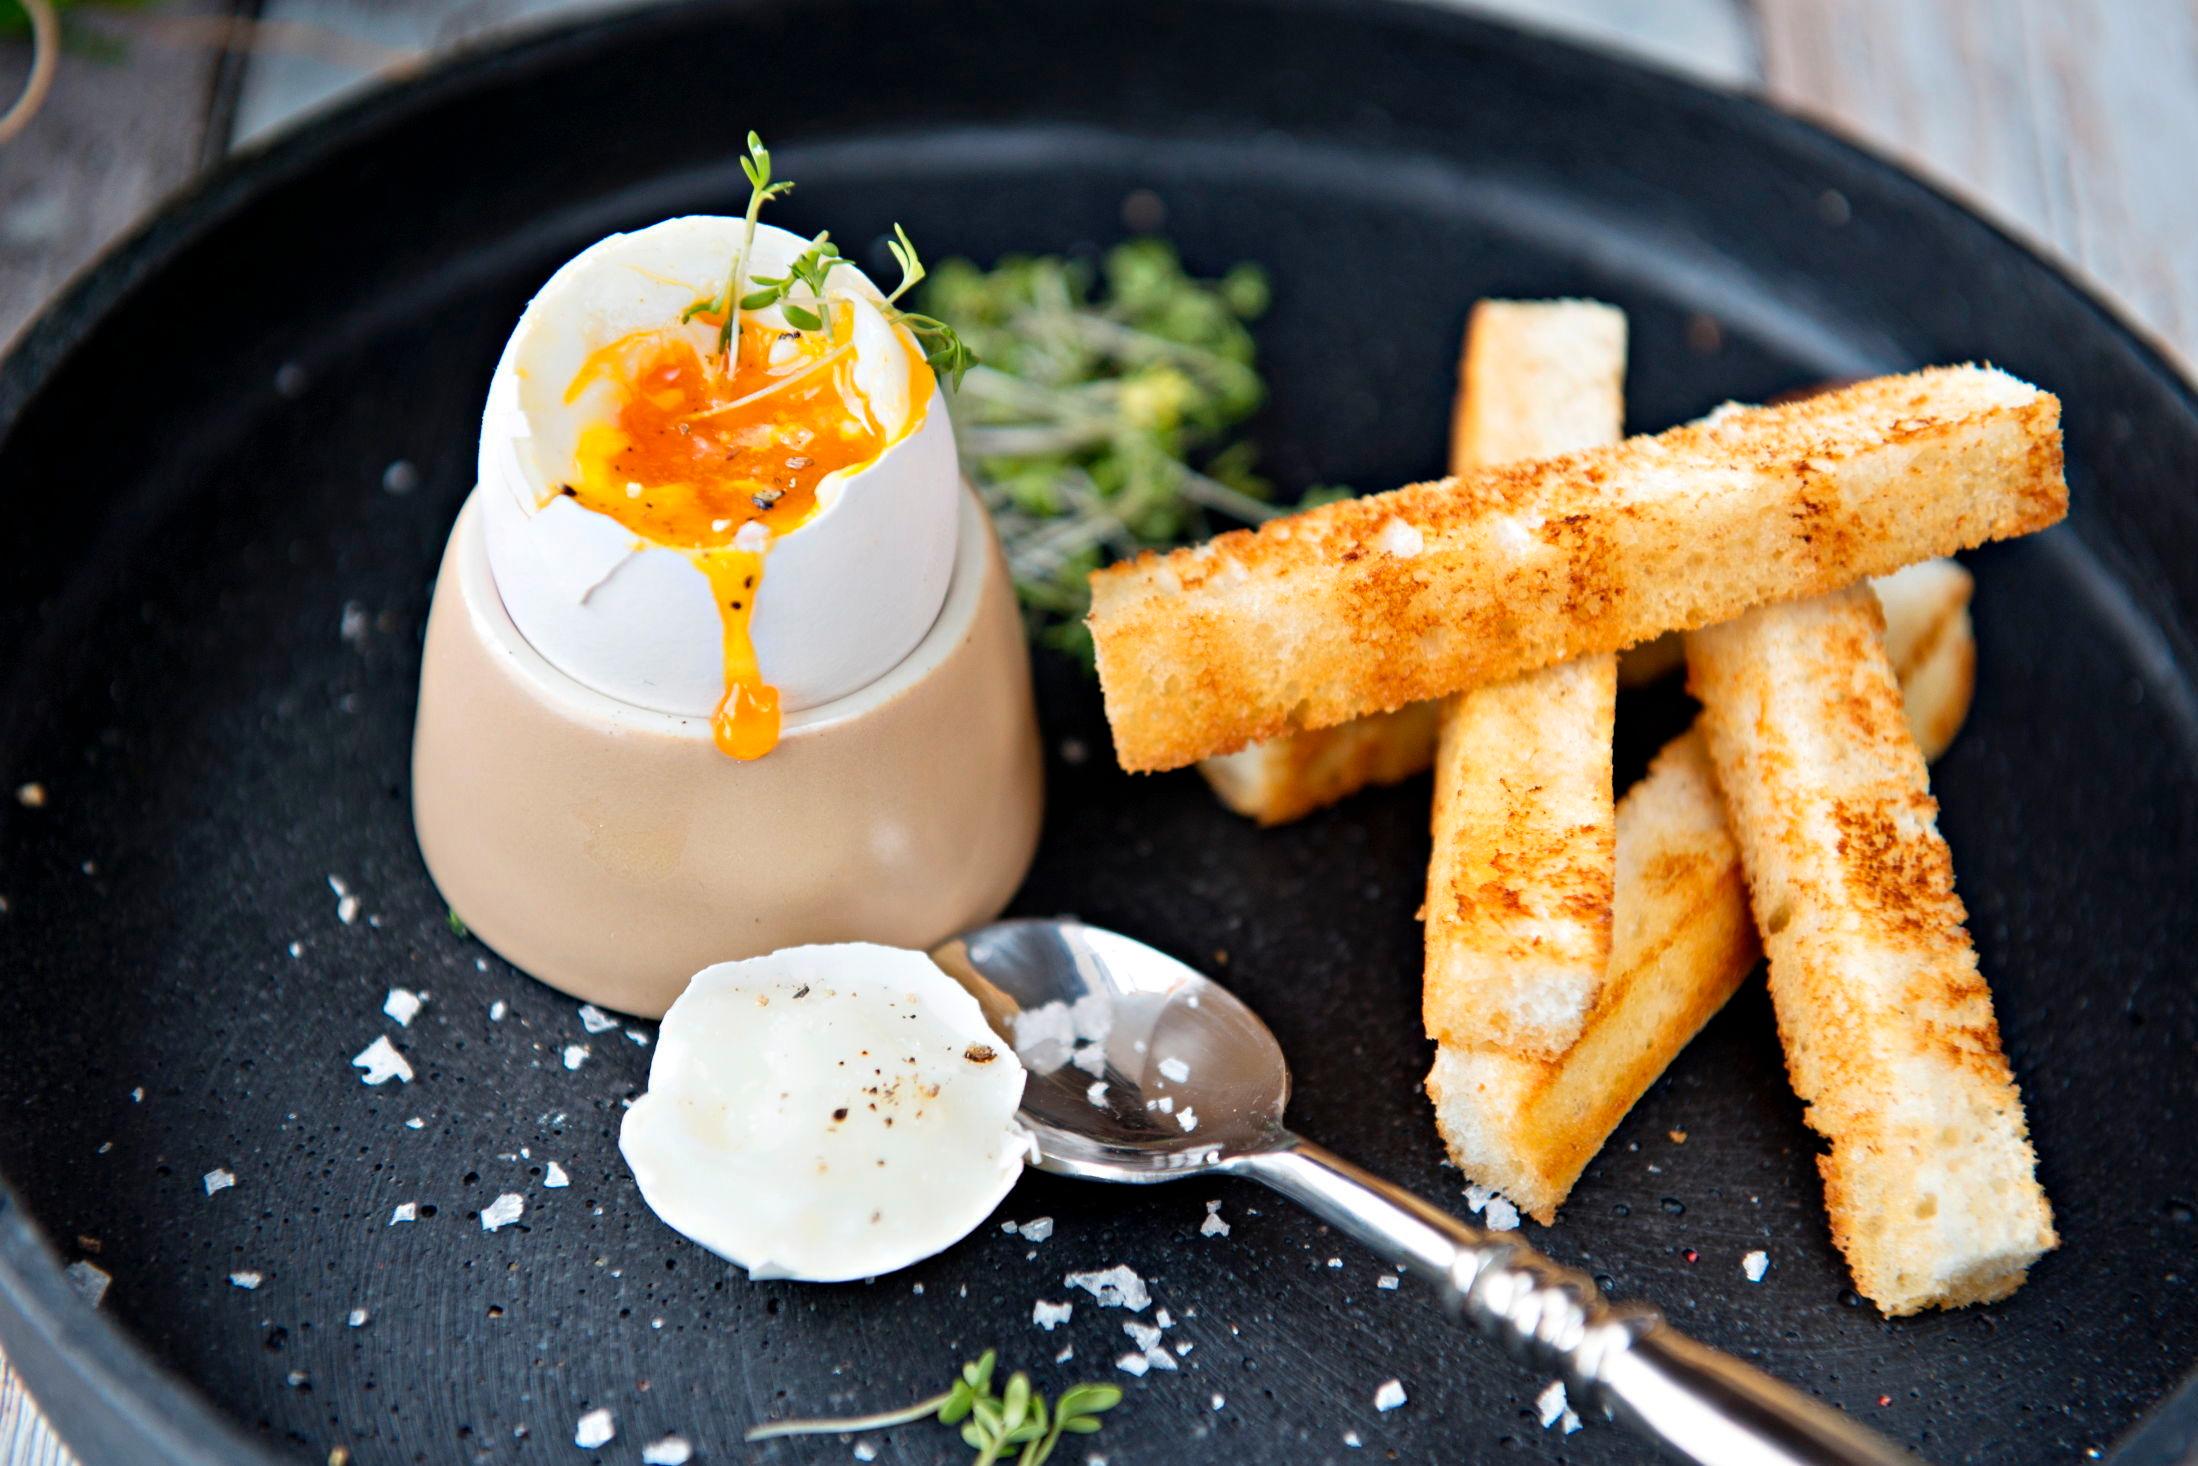 EGG TIL FROKOST: Så enkelt kan det gjøres; bløtkokt egg med sprøstekt loff. Oppskriften finner du her! Foto: Eivind Griffith Brænde/VG